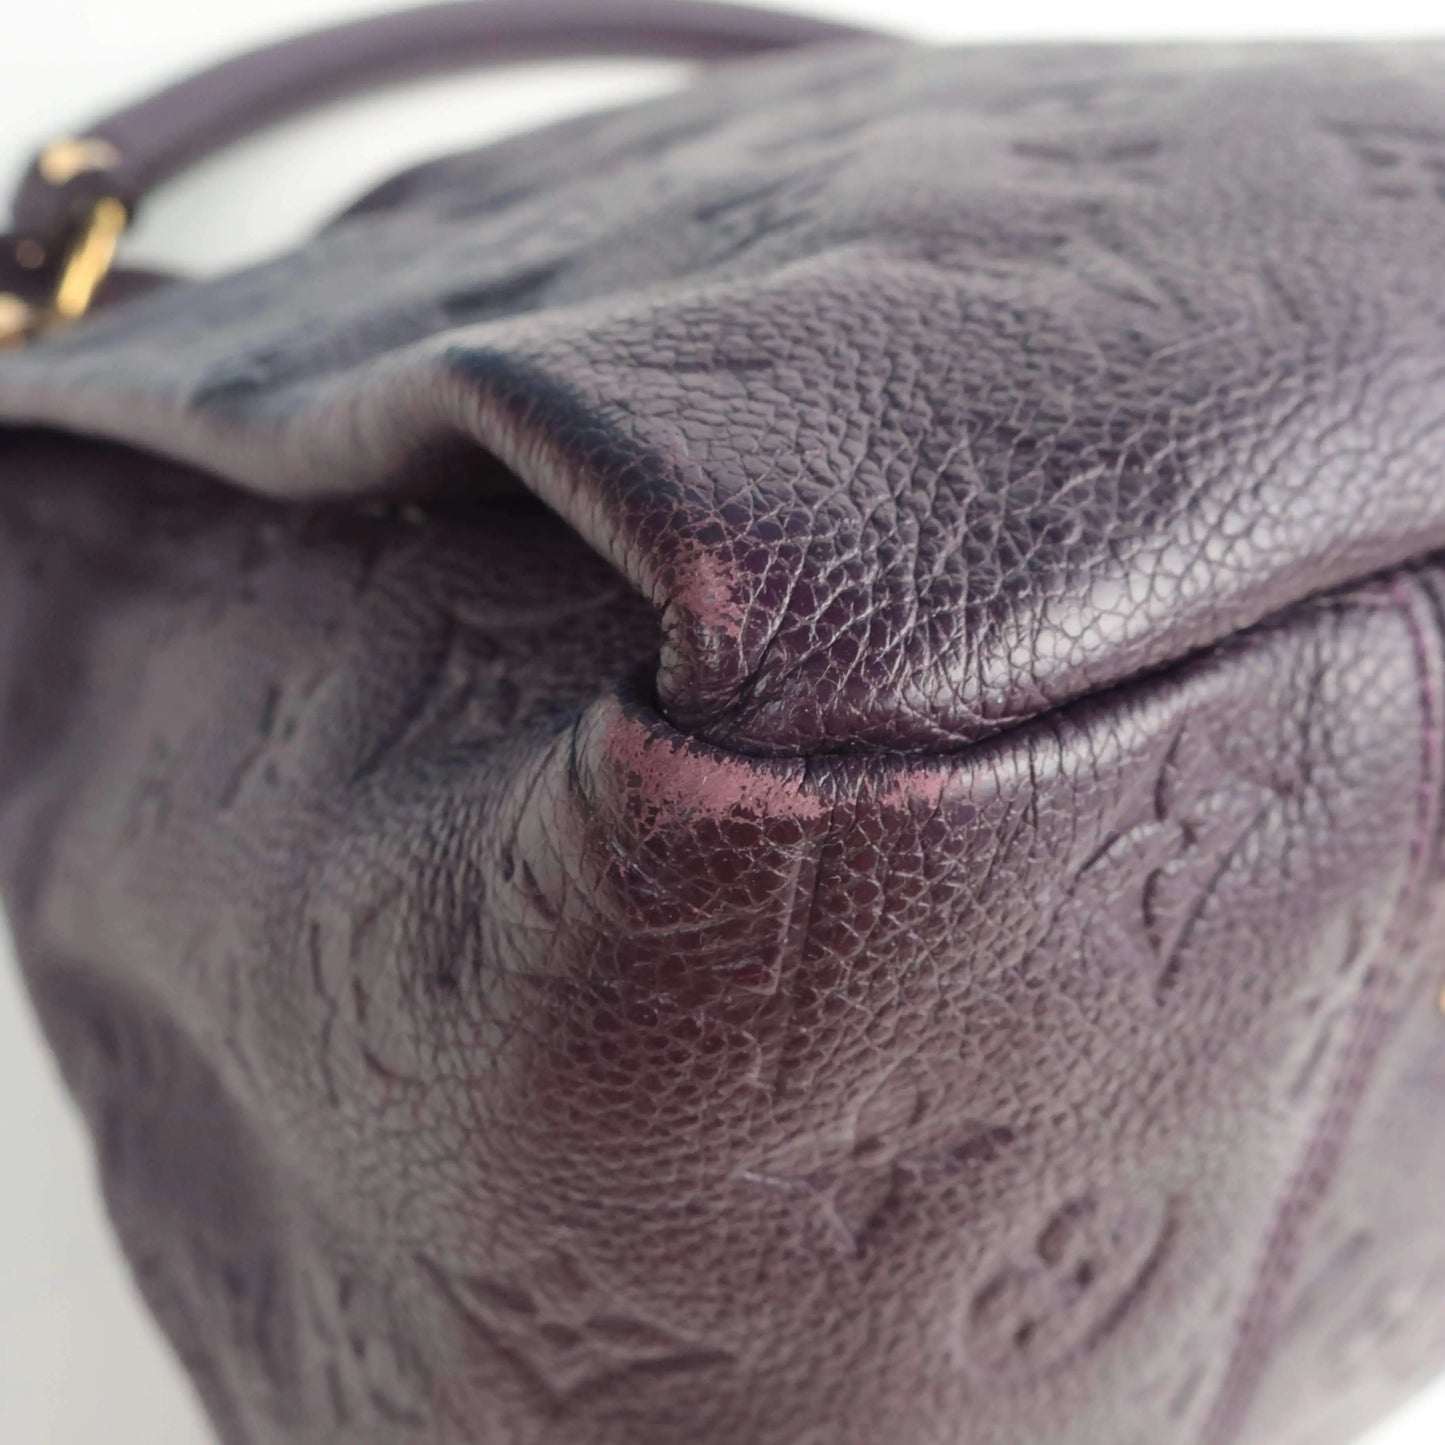 Louis VuittonArtsy MM Empreinte Leather Handbag Aube